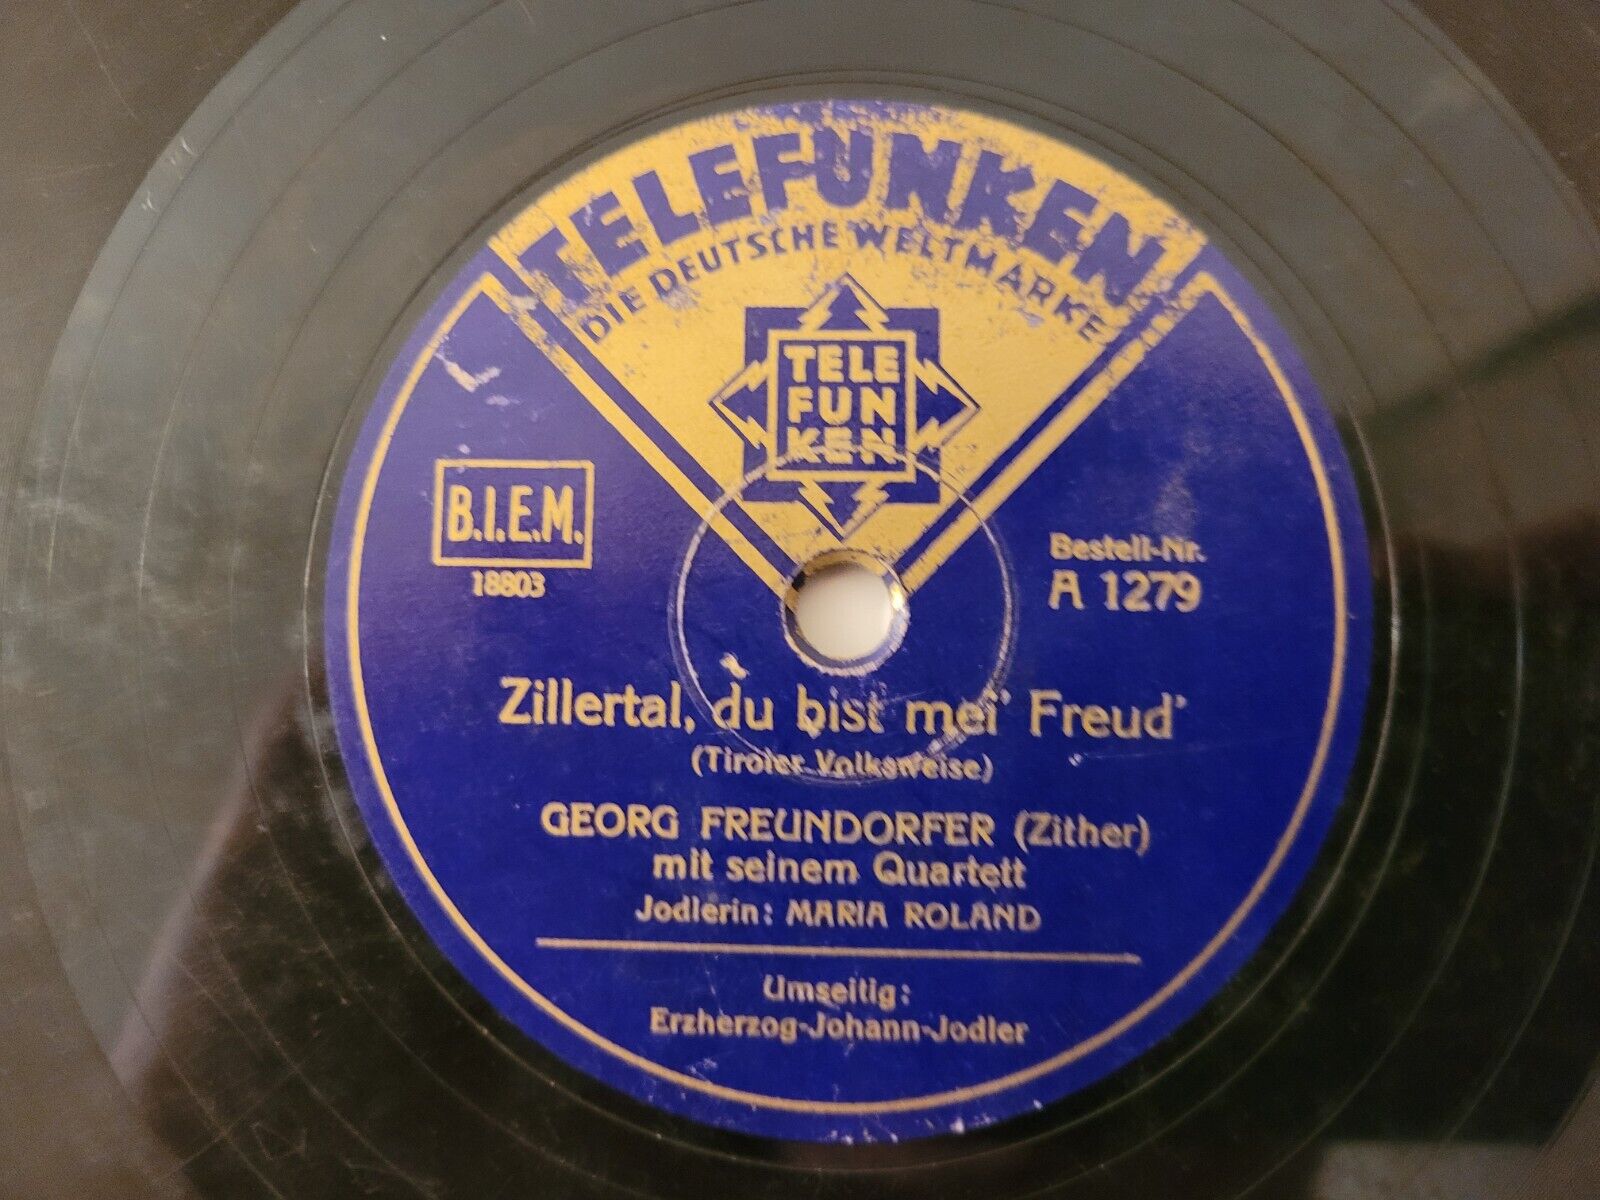 Zillertal, du bist mei Freud\' (Tiroler Volksweise)GEORG FREUNDORFER...